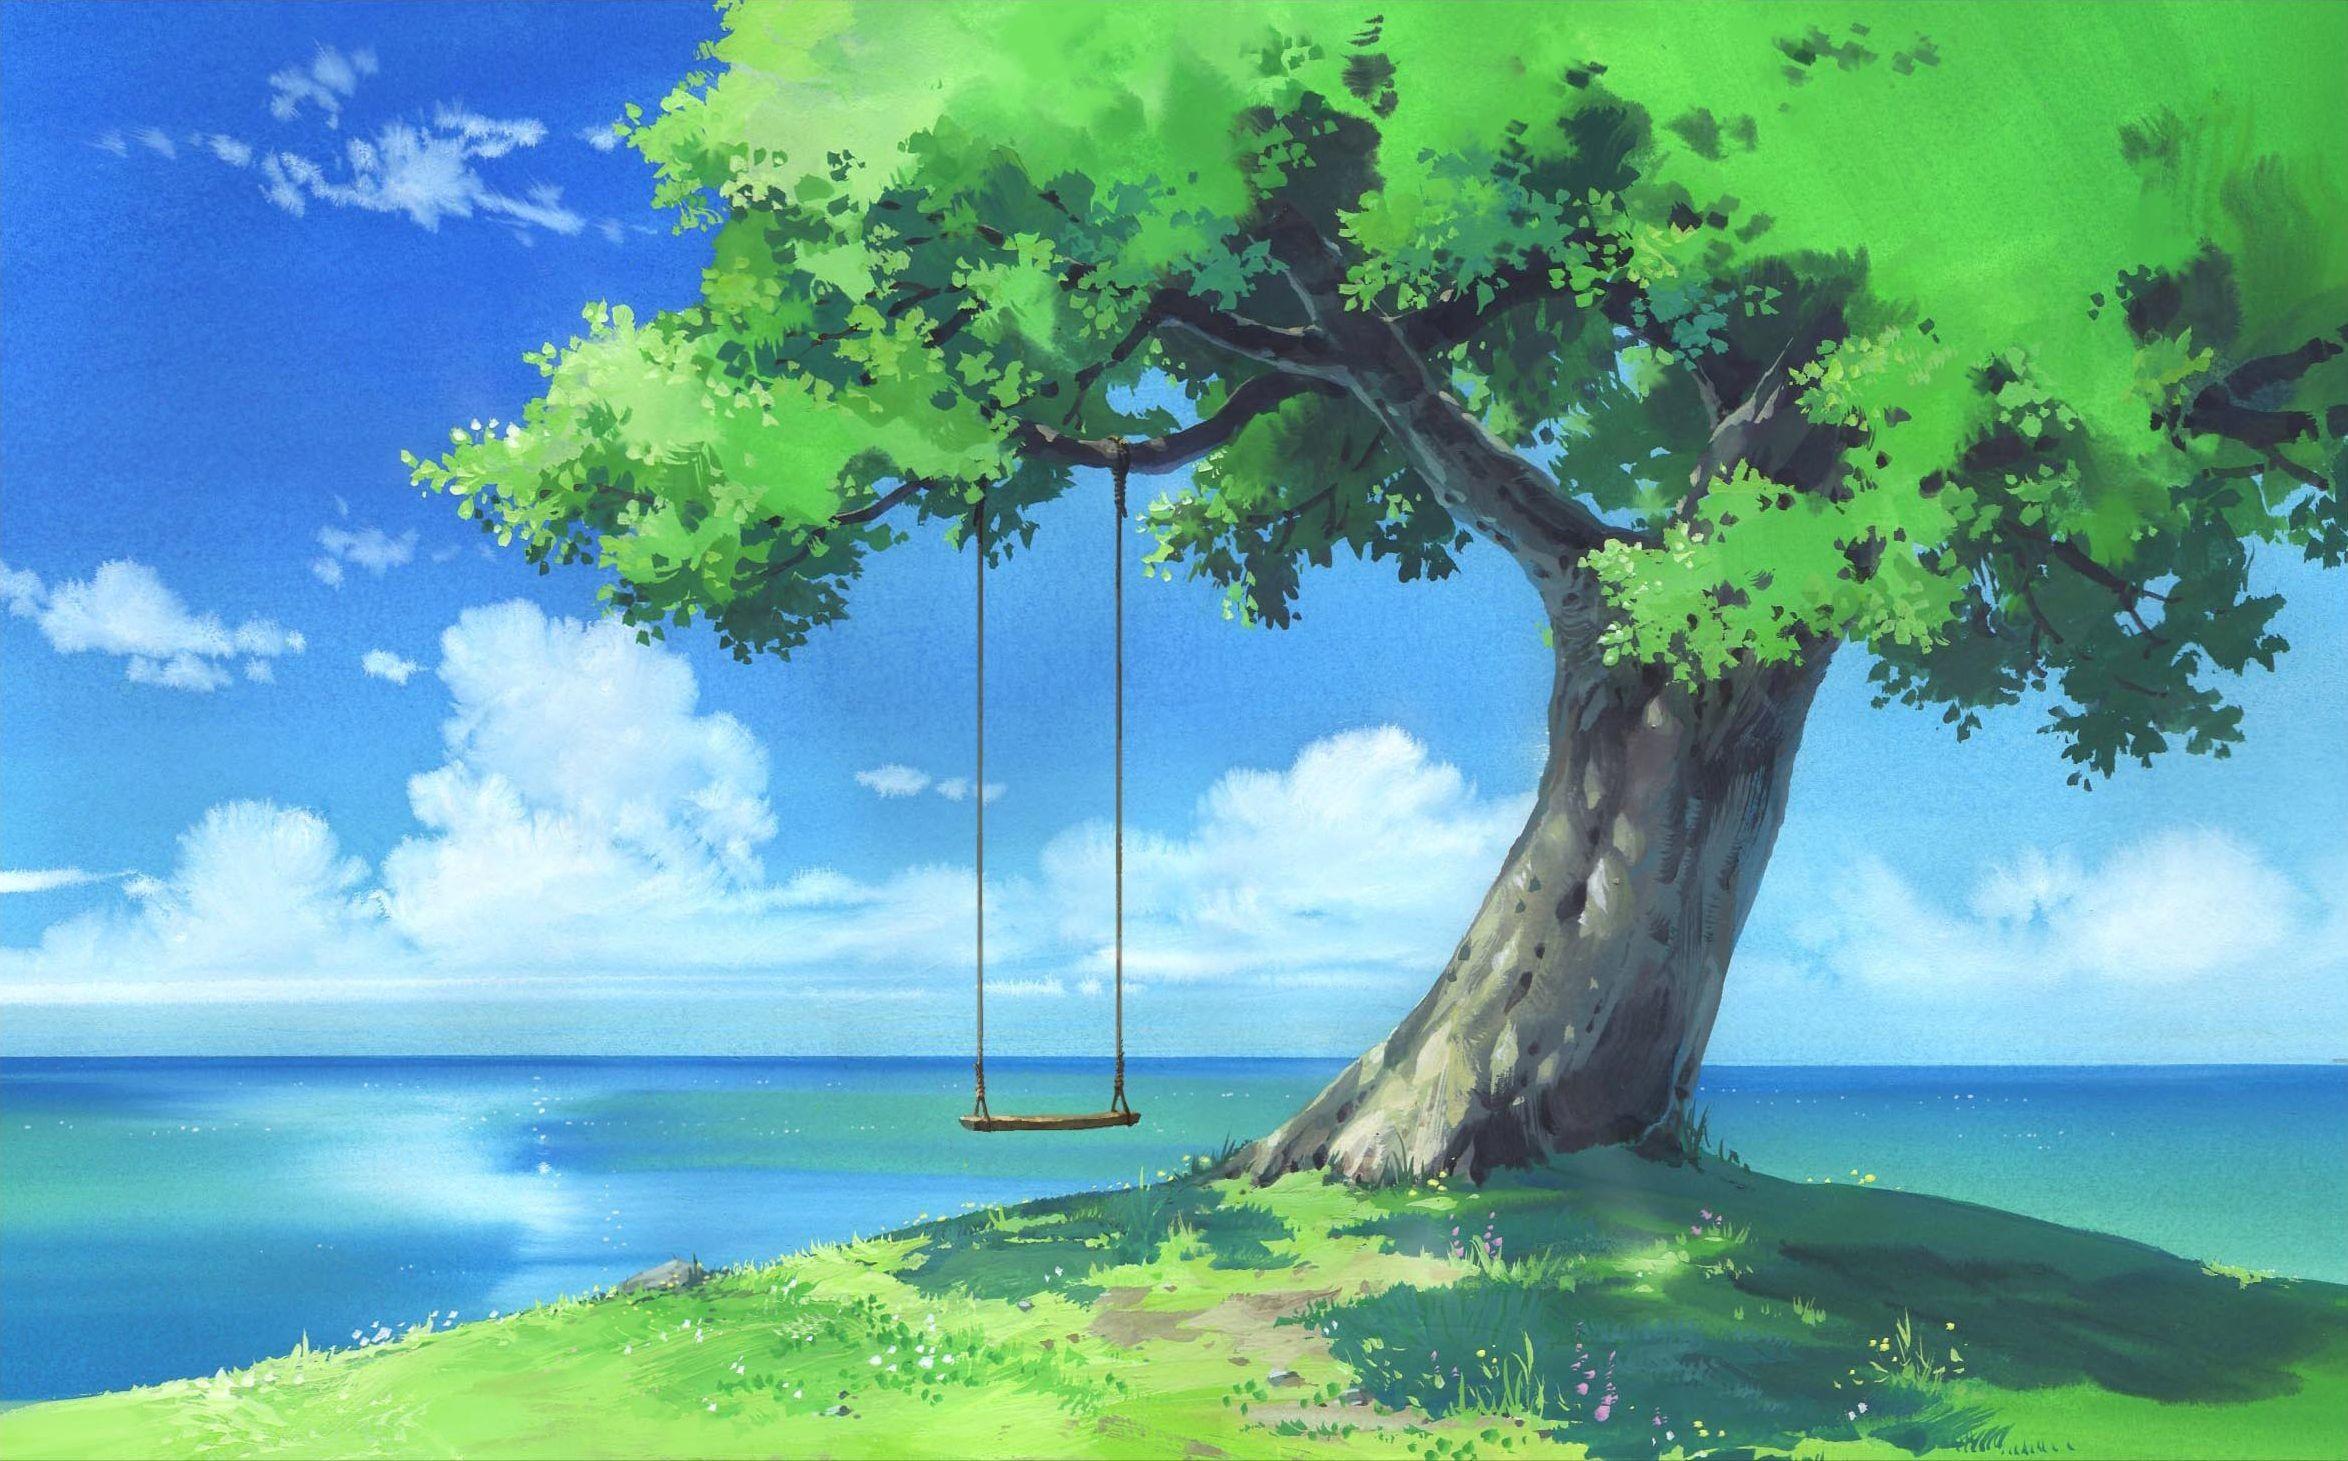 Bạn có phải là một người yêu cây cối? Nếu có, hình nền anime cây chắc chắn sẽ làm bạn cảm thấy hài lòng. Hình ảnh đẹp mắt này đem đến cho bạn cảm giác yên tĩnh, thanh bình, tươi mới và rực rỡ. Nhấn vào hình ảnh để nhận được sự kết nối với tự nhiên.